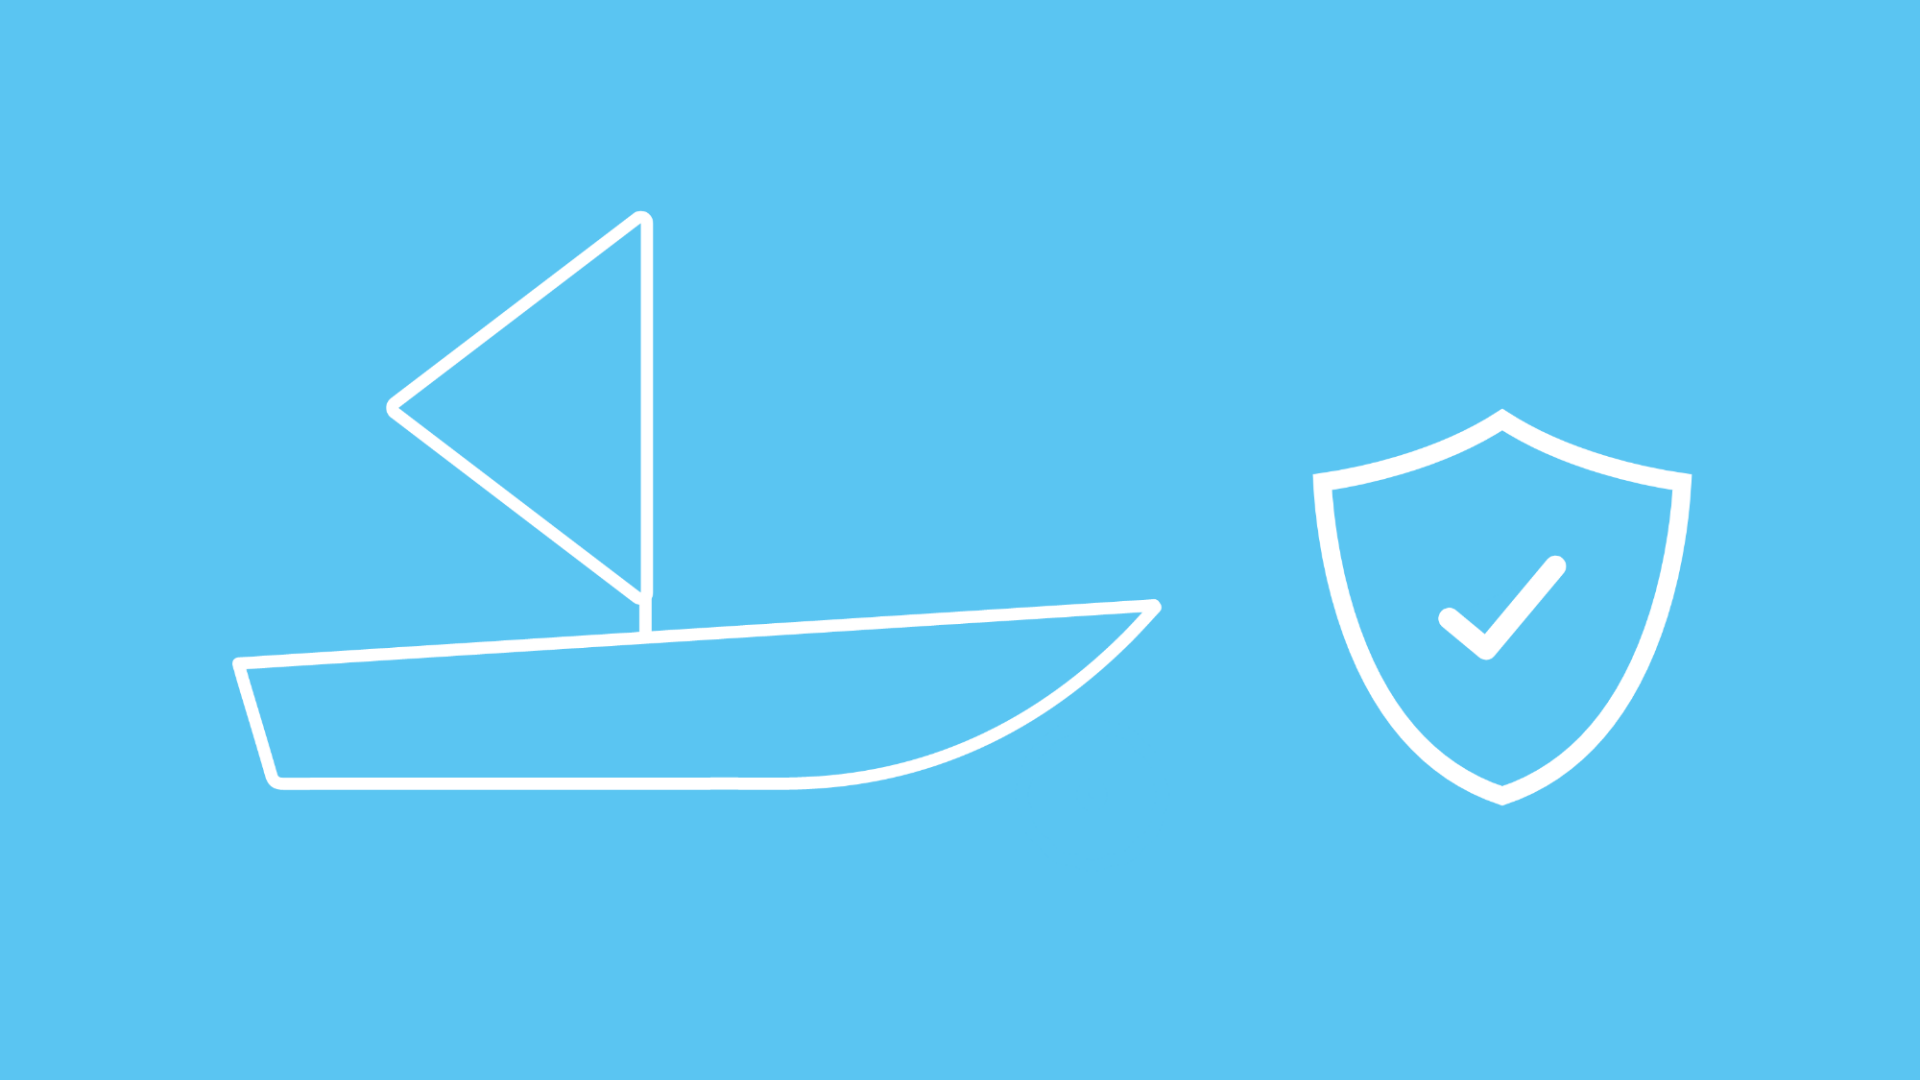 Die Grafik zeigt ein Segelboot mit einem Wappen, das den Versicherungsschutz symbolisiert.